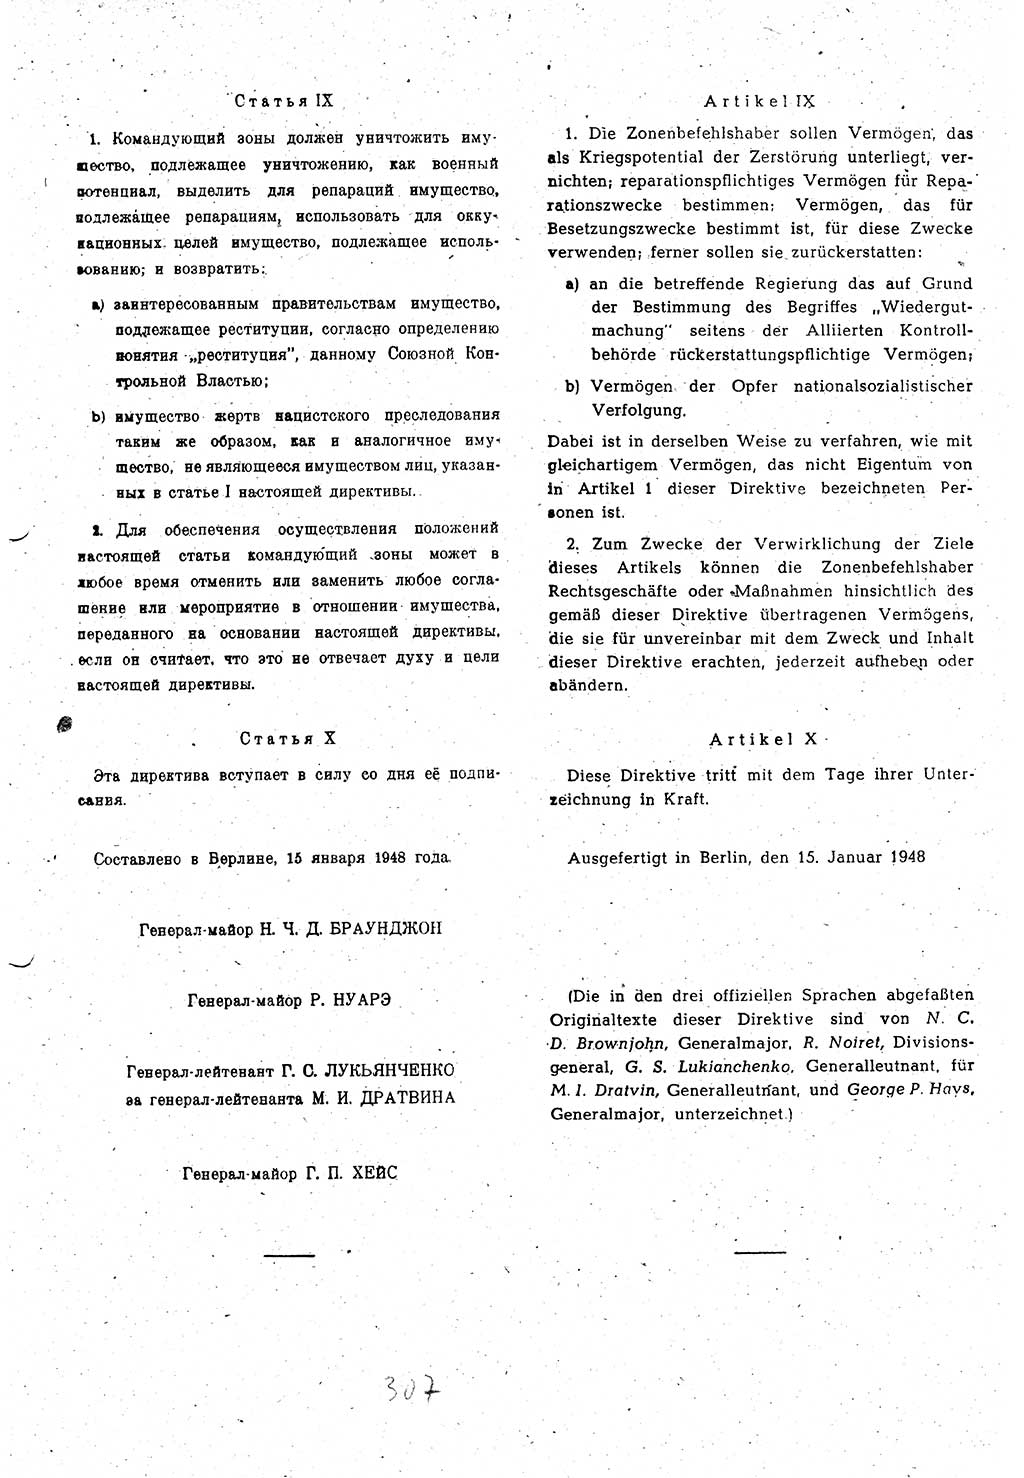 Amtsblatt des Kontrollrats (ABlKR) in Deutschland 1948, Seite 307/2 (ABlKR Dtl. 1948, S. 307/2)